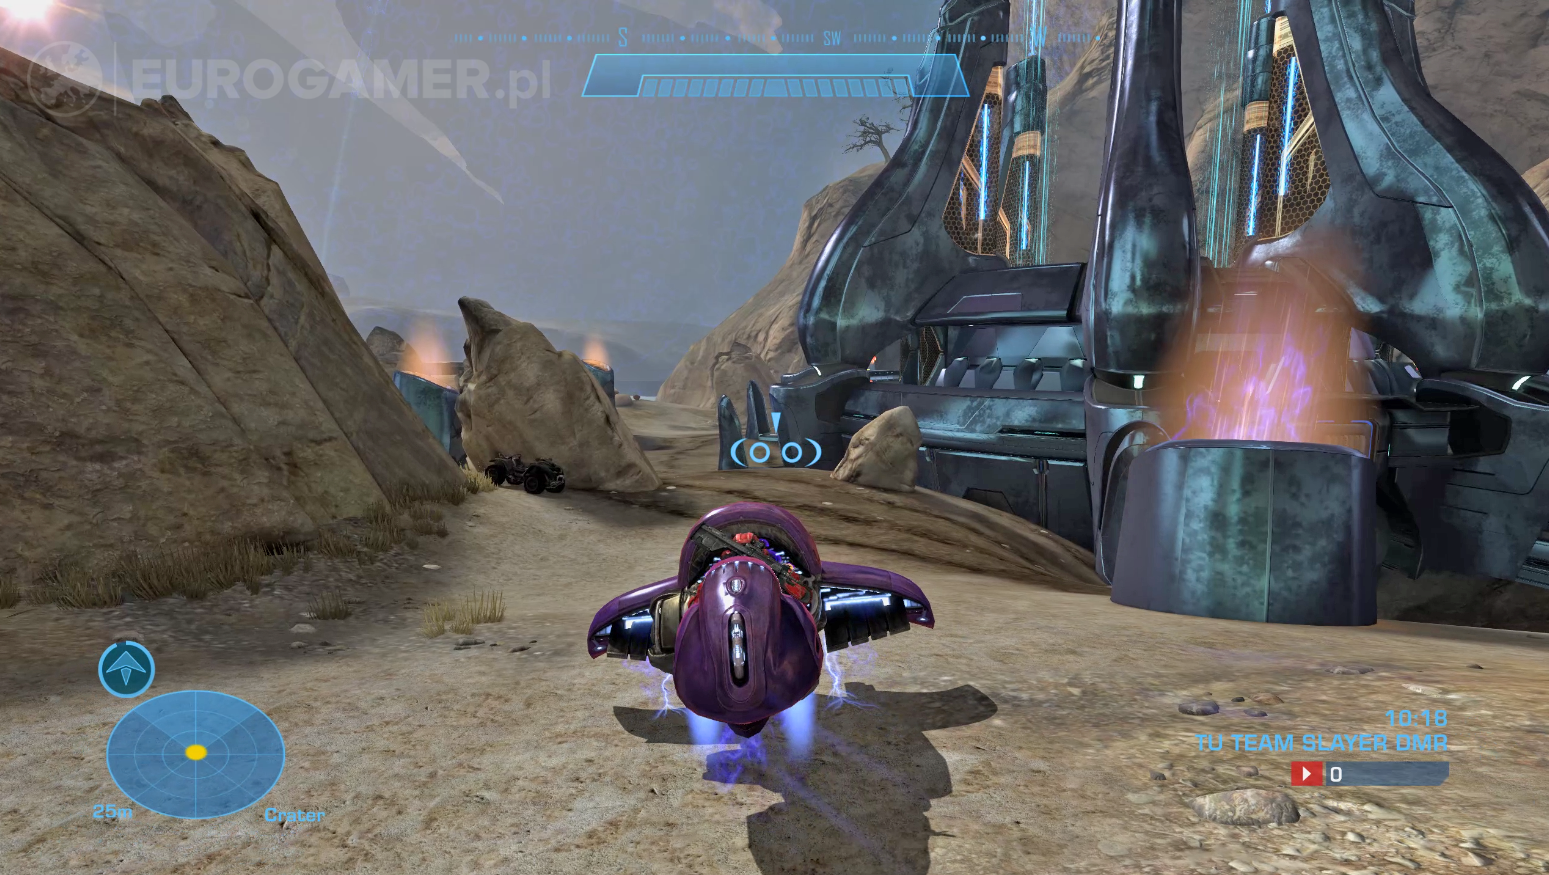 Obrazki dla Halo: Reach - pojazdy, gdzie są i jak z nich korzystać